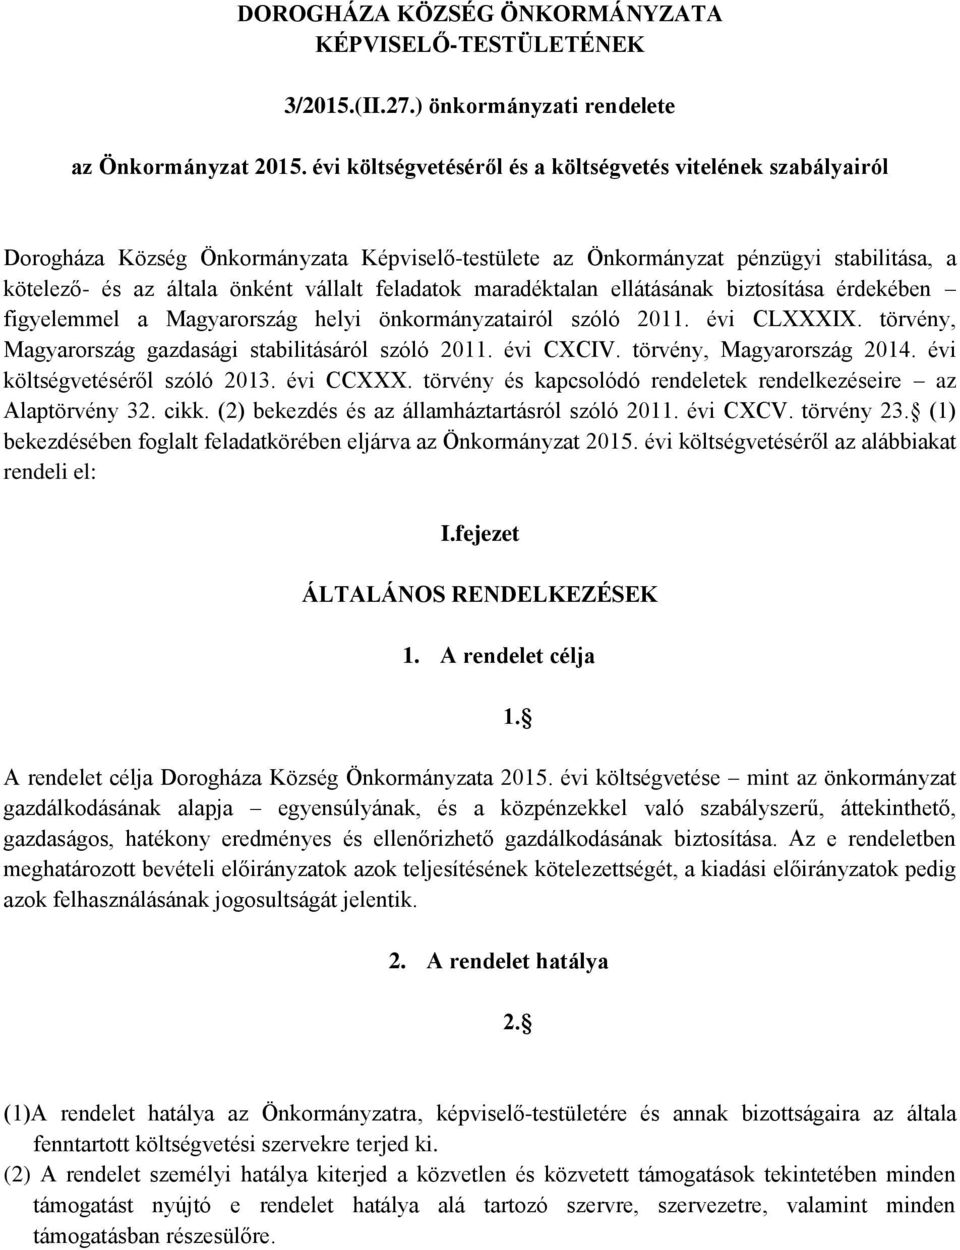 feladatok maradéktalan ellátásának biztosítása érdekében figyelemmel a Magyarország helyi önkormányzatairól szóló 2011. évi CLXXXIX. törvény, Magyarország gazdasági stabilitásáról szóló 2011.